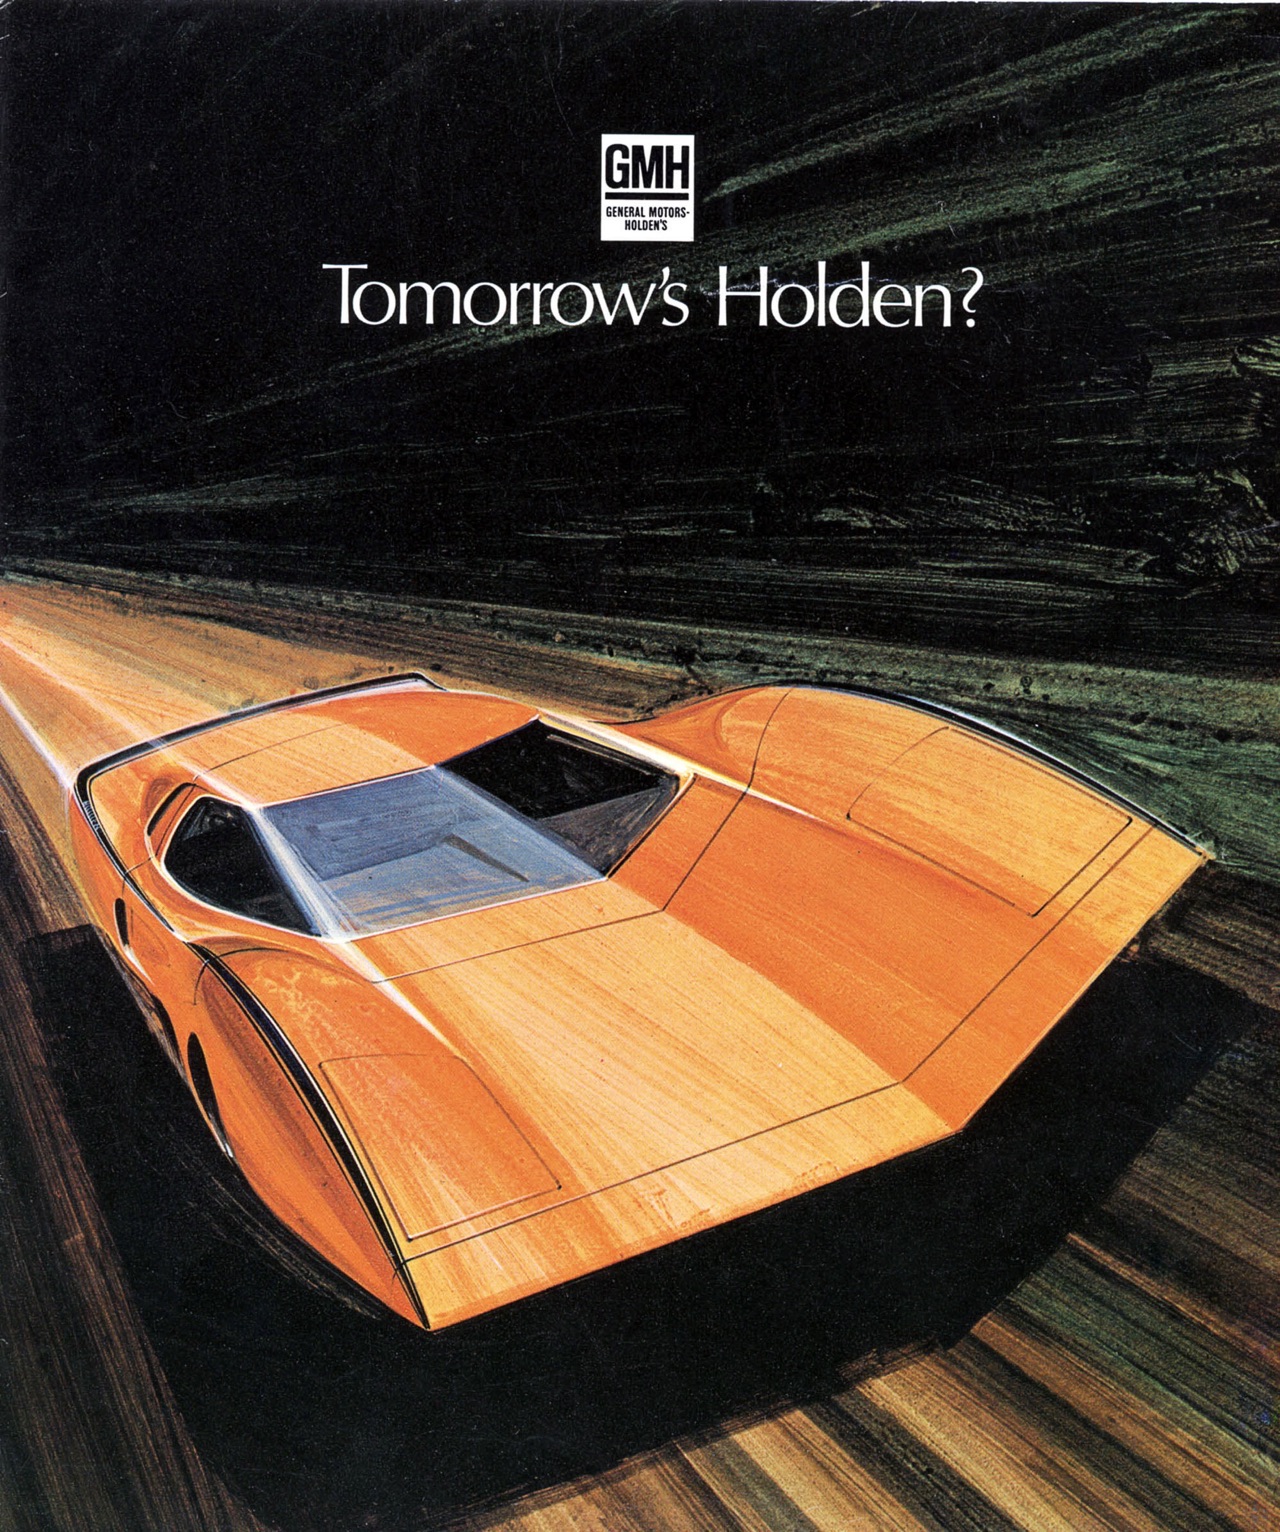 '69 Holden Hurricane - Tomorrow' Holden ? 1